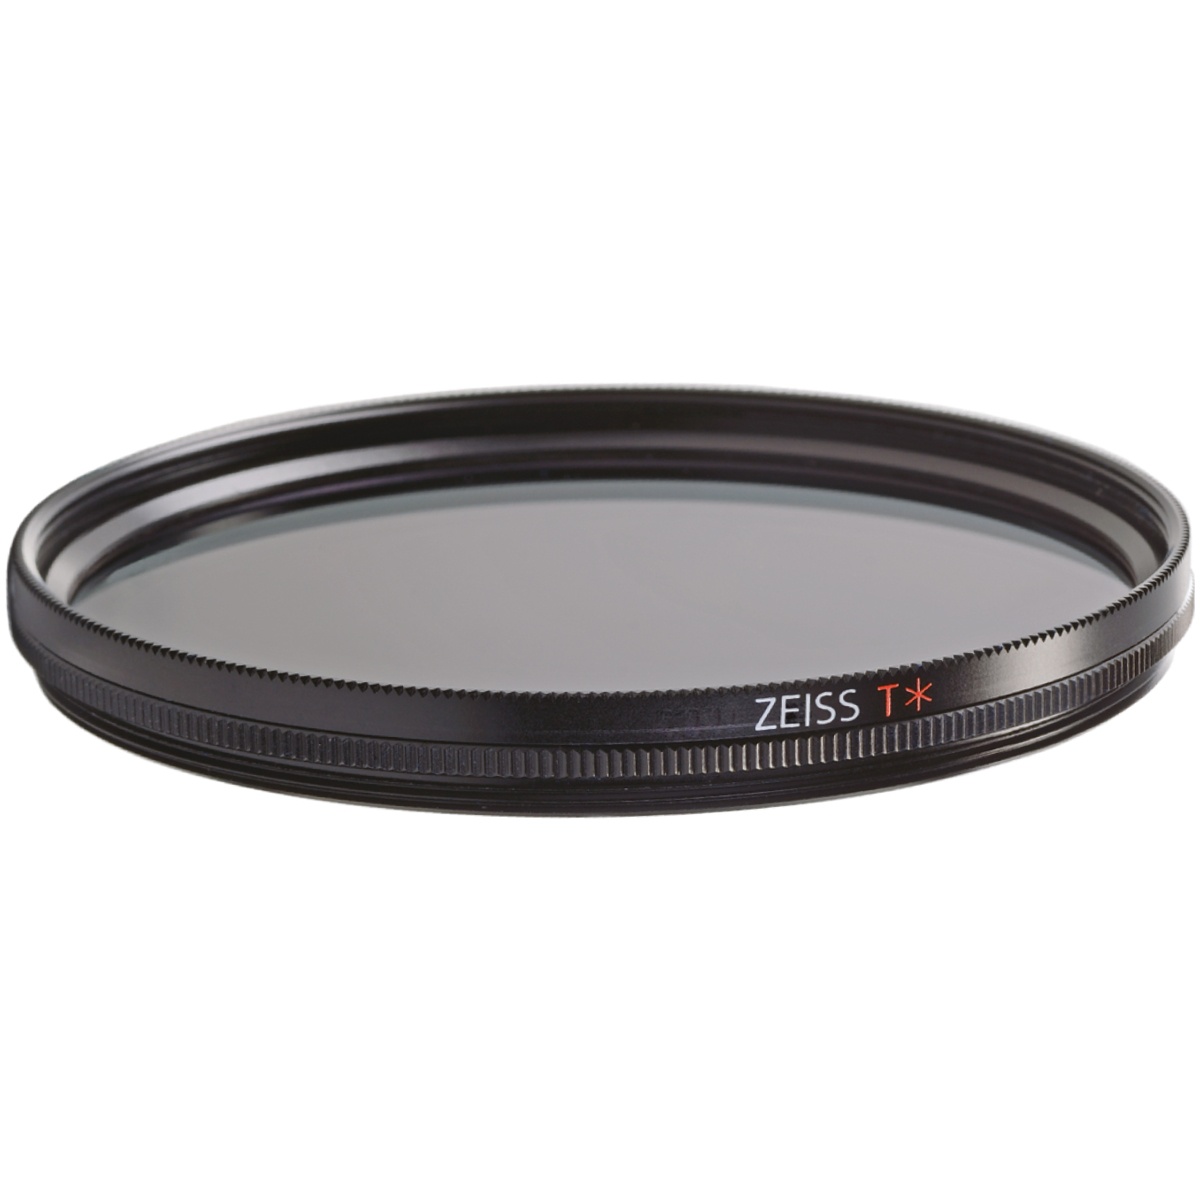 ZEISS T POL-Filter circular 62mm